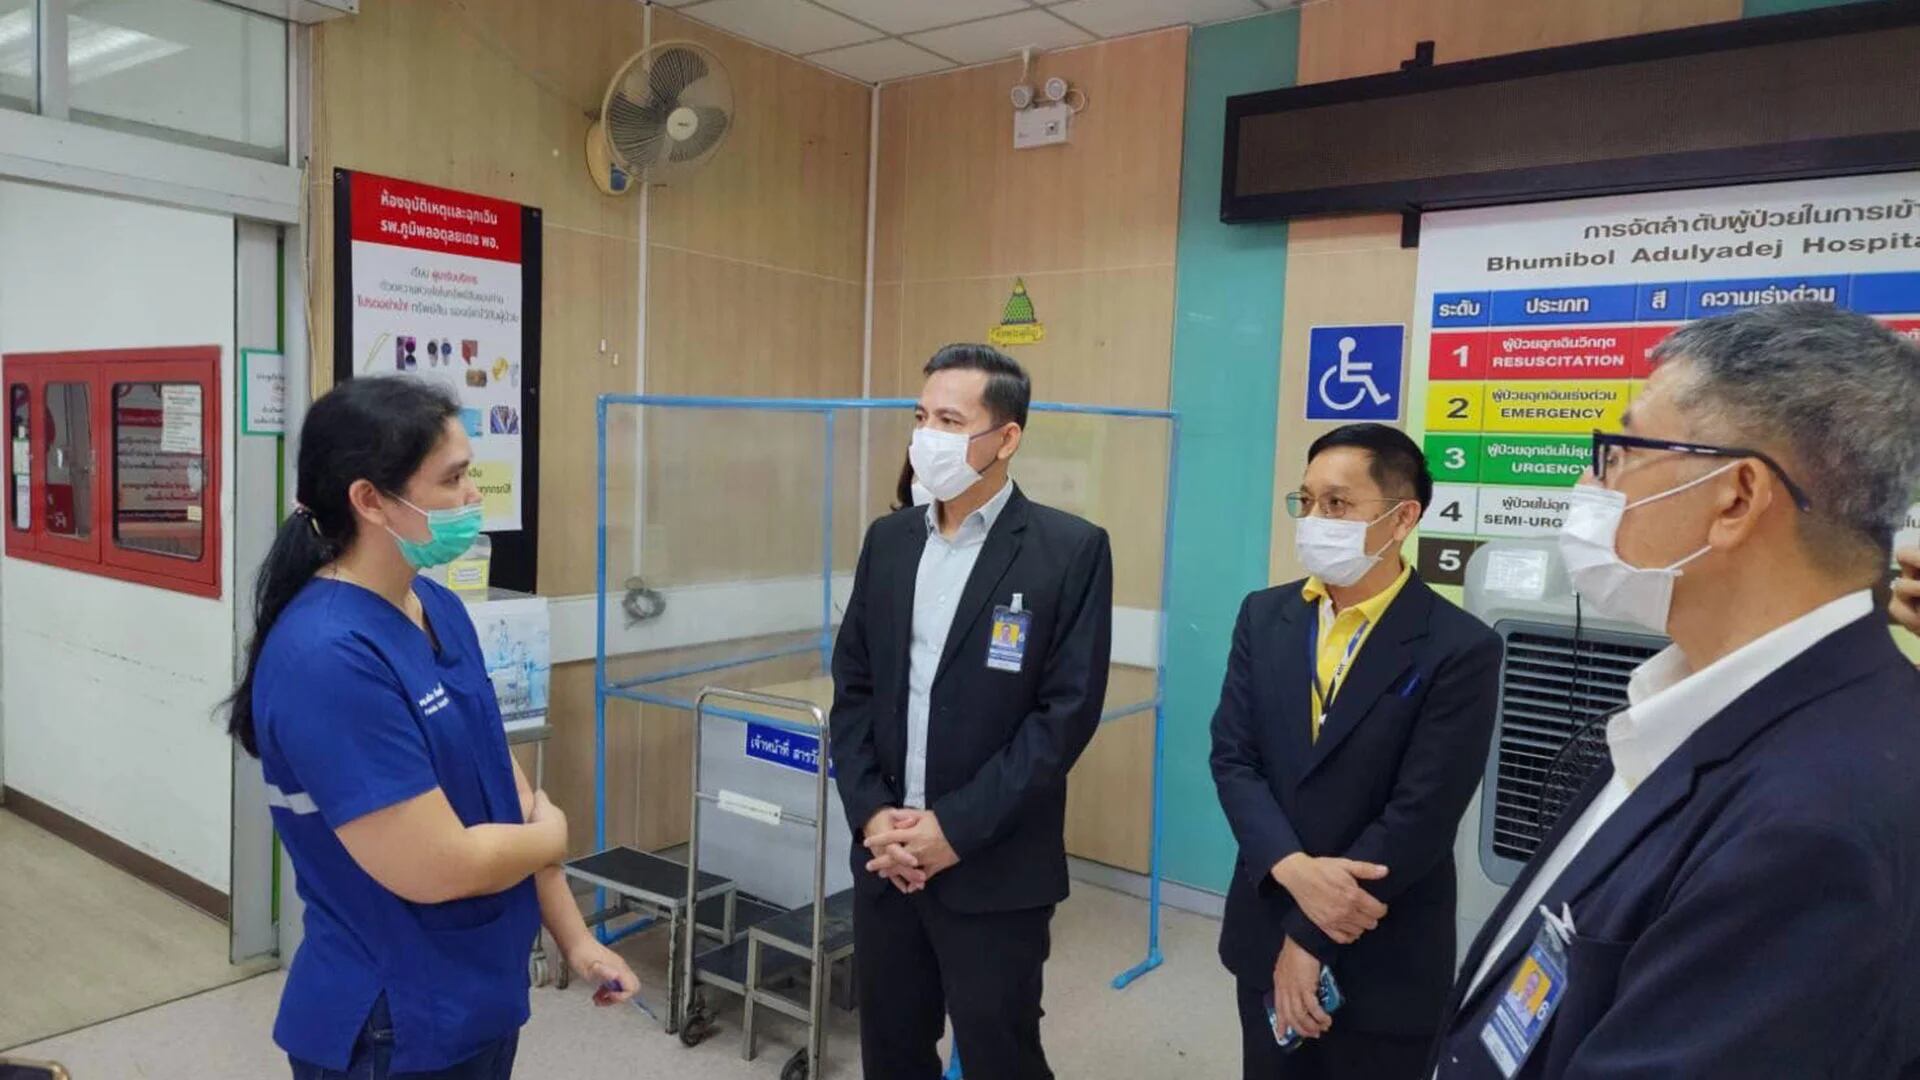 Un equipo médico tuvo que cortarle la pierna izquierda por encima de la rodilla, según los responsables del aeropuerto (Don Mueang International Airport - Facebook)